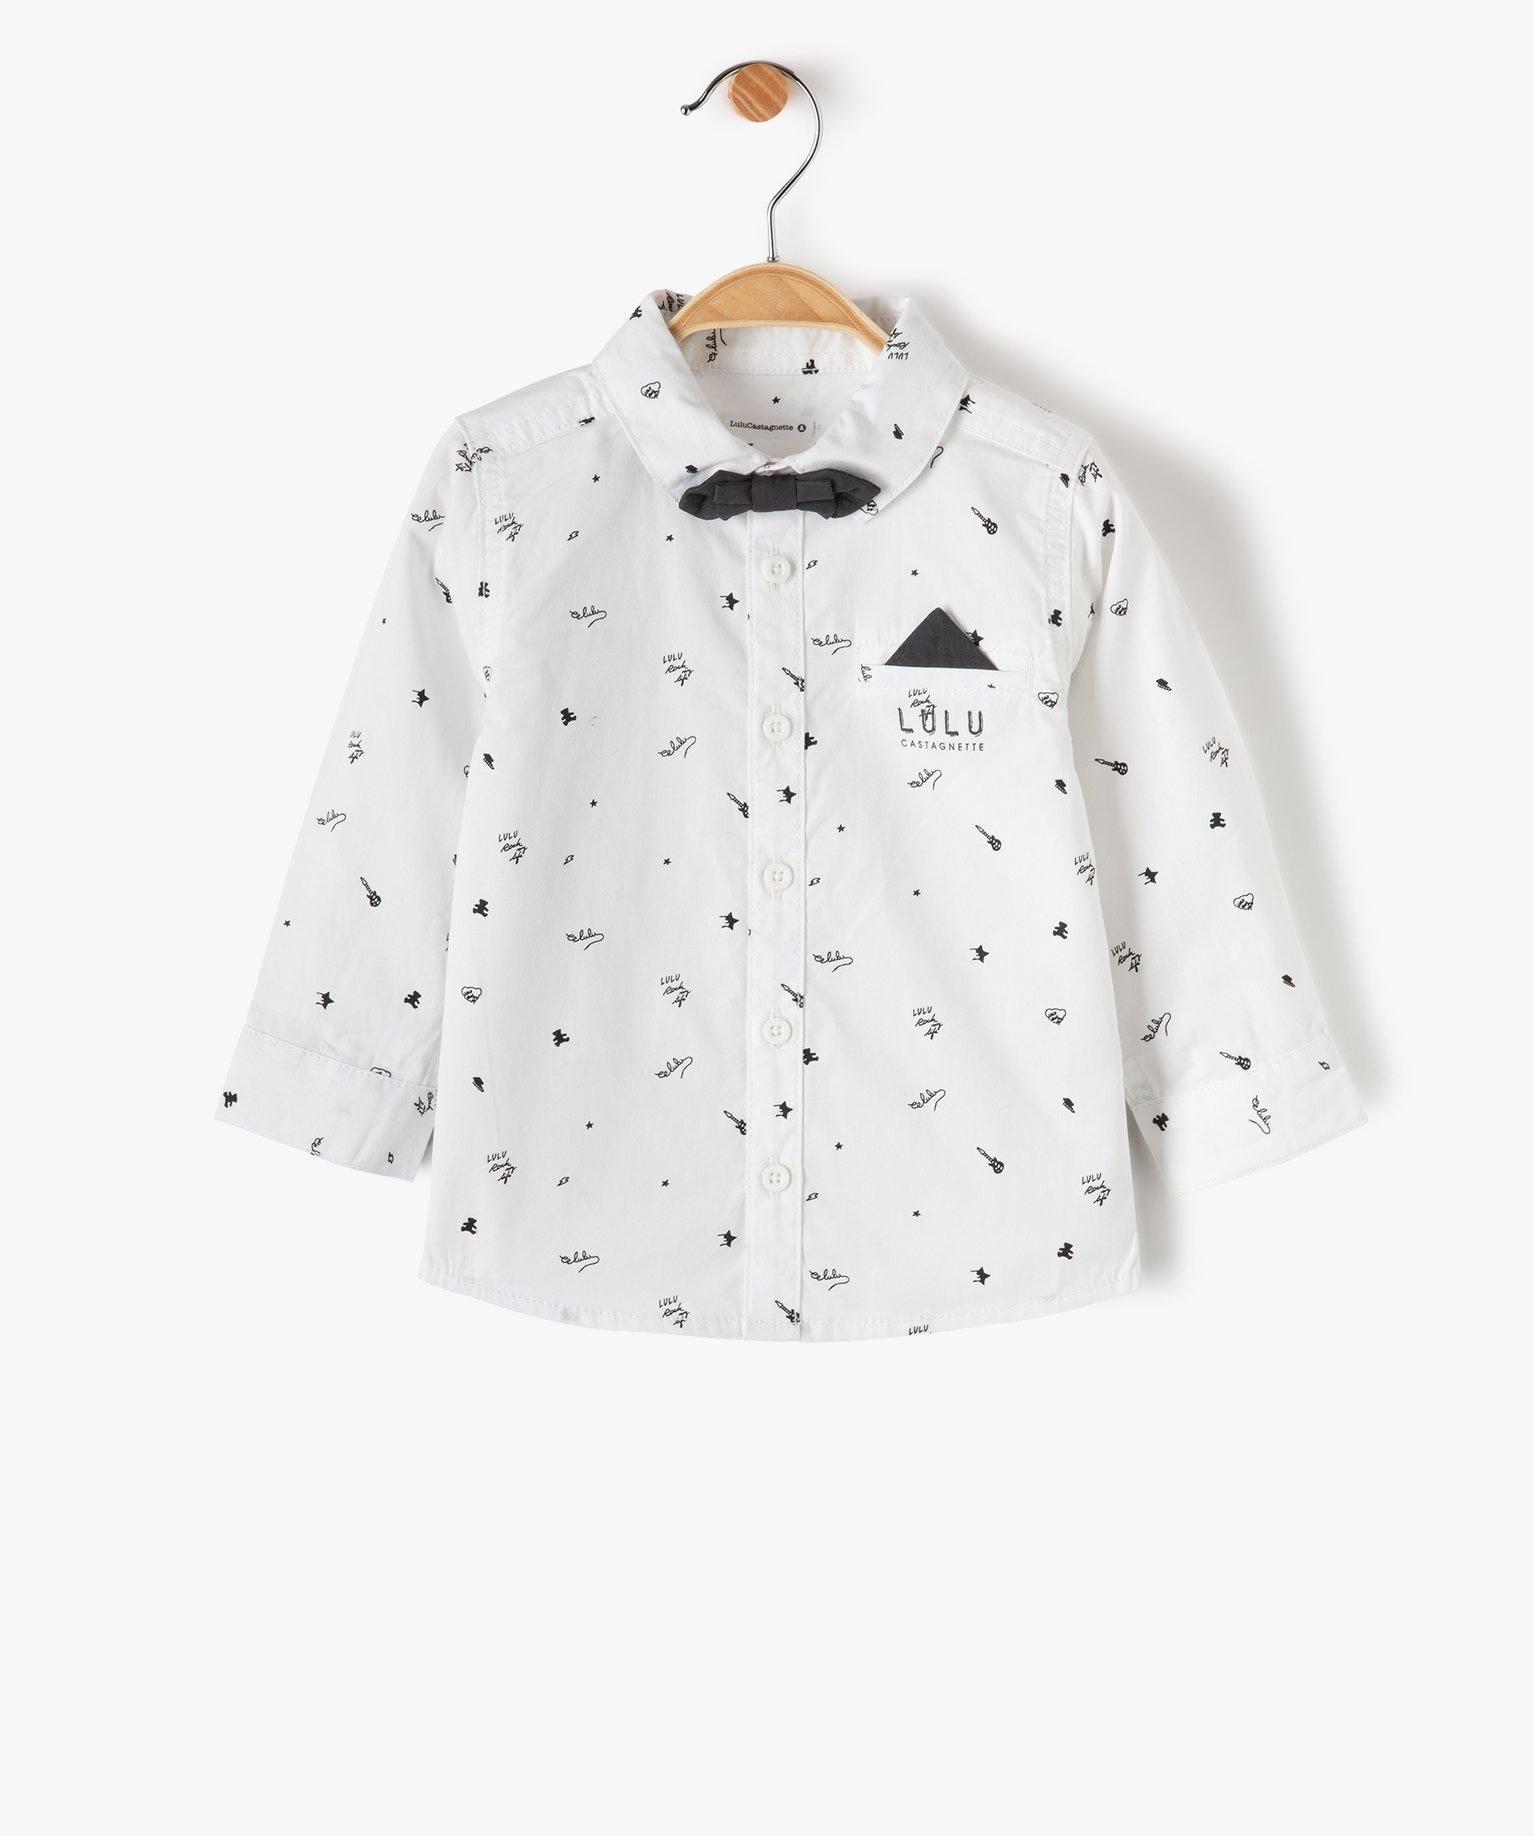 chemise bebe garcon avec noud papillon - lulu castagnette blanc